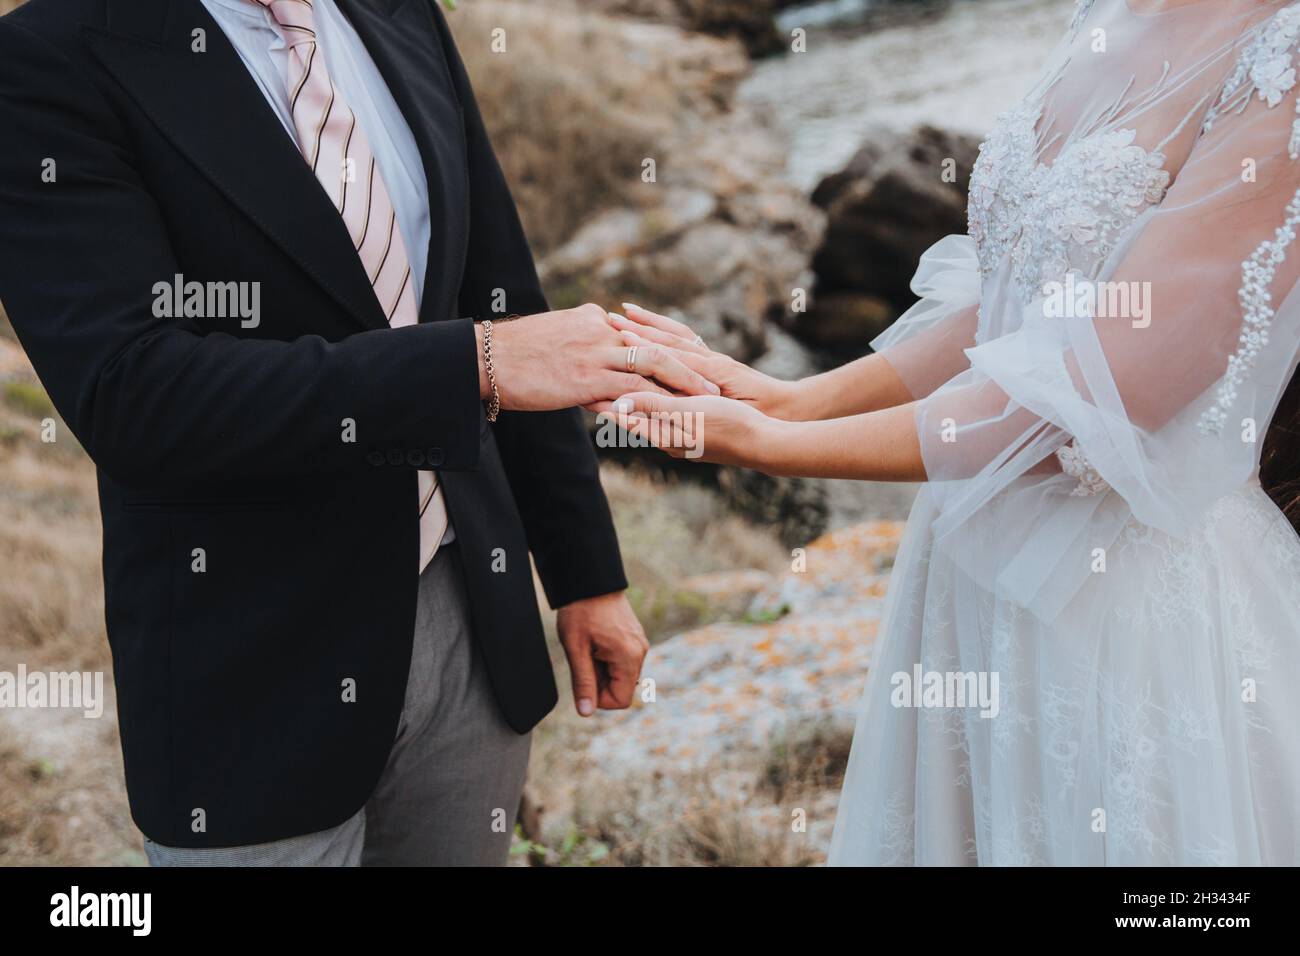 Une femme dans une belle robe blanche tient un homme vêtu d'un costume à la main, beau moment romantique entre deux amoureux Banque D'Images